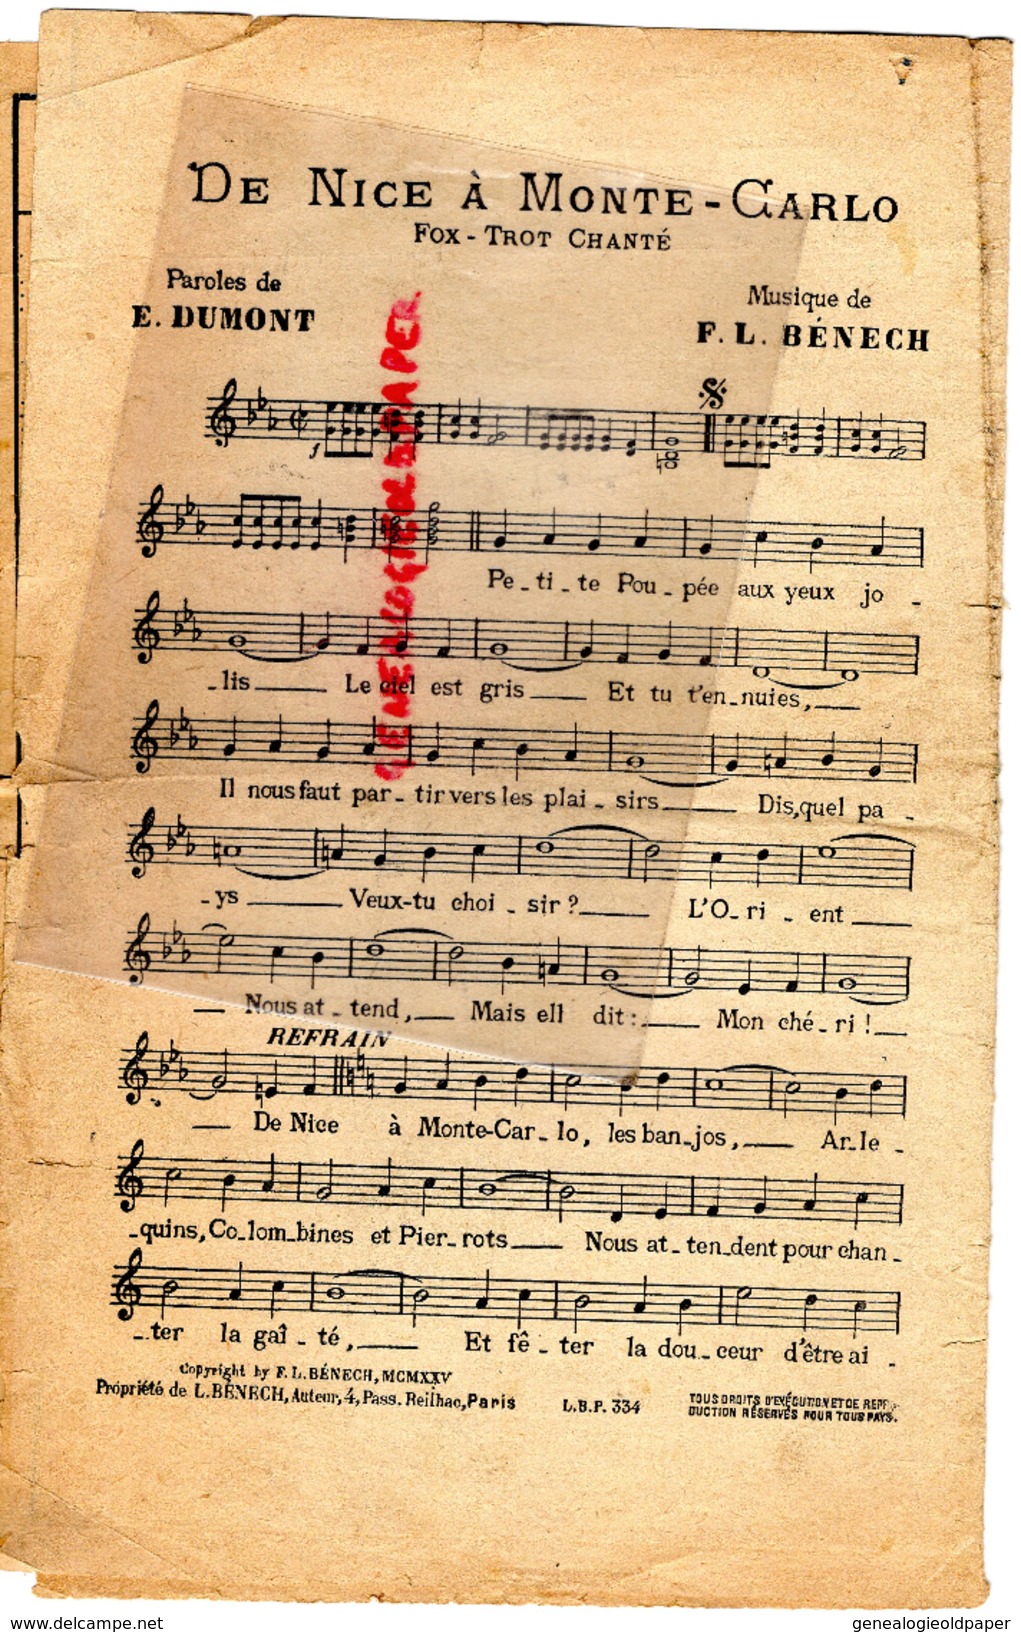 PARTITION MUSICALE-DE NICE A MONTE CARLO- MONACO- FOX TROT- E. DUMONT - MUSIQUE F.L. BENECH-1925-EVENTAIL - Partitions Musicales Anciennes